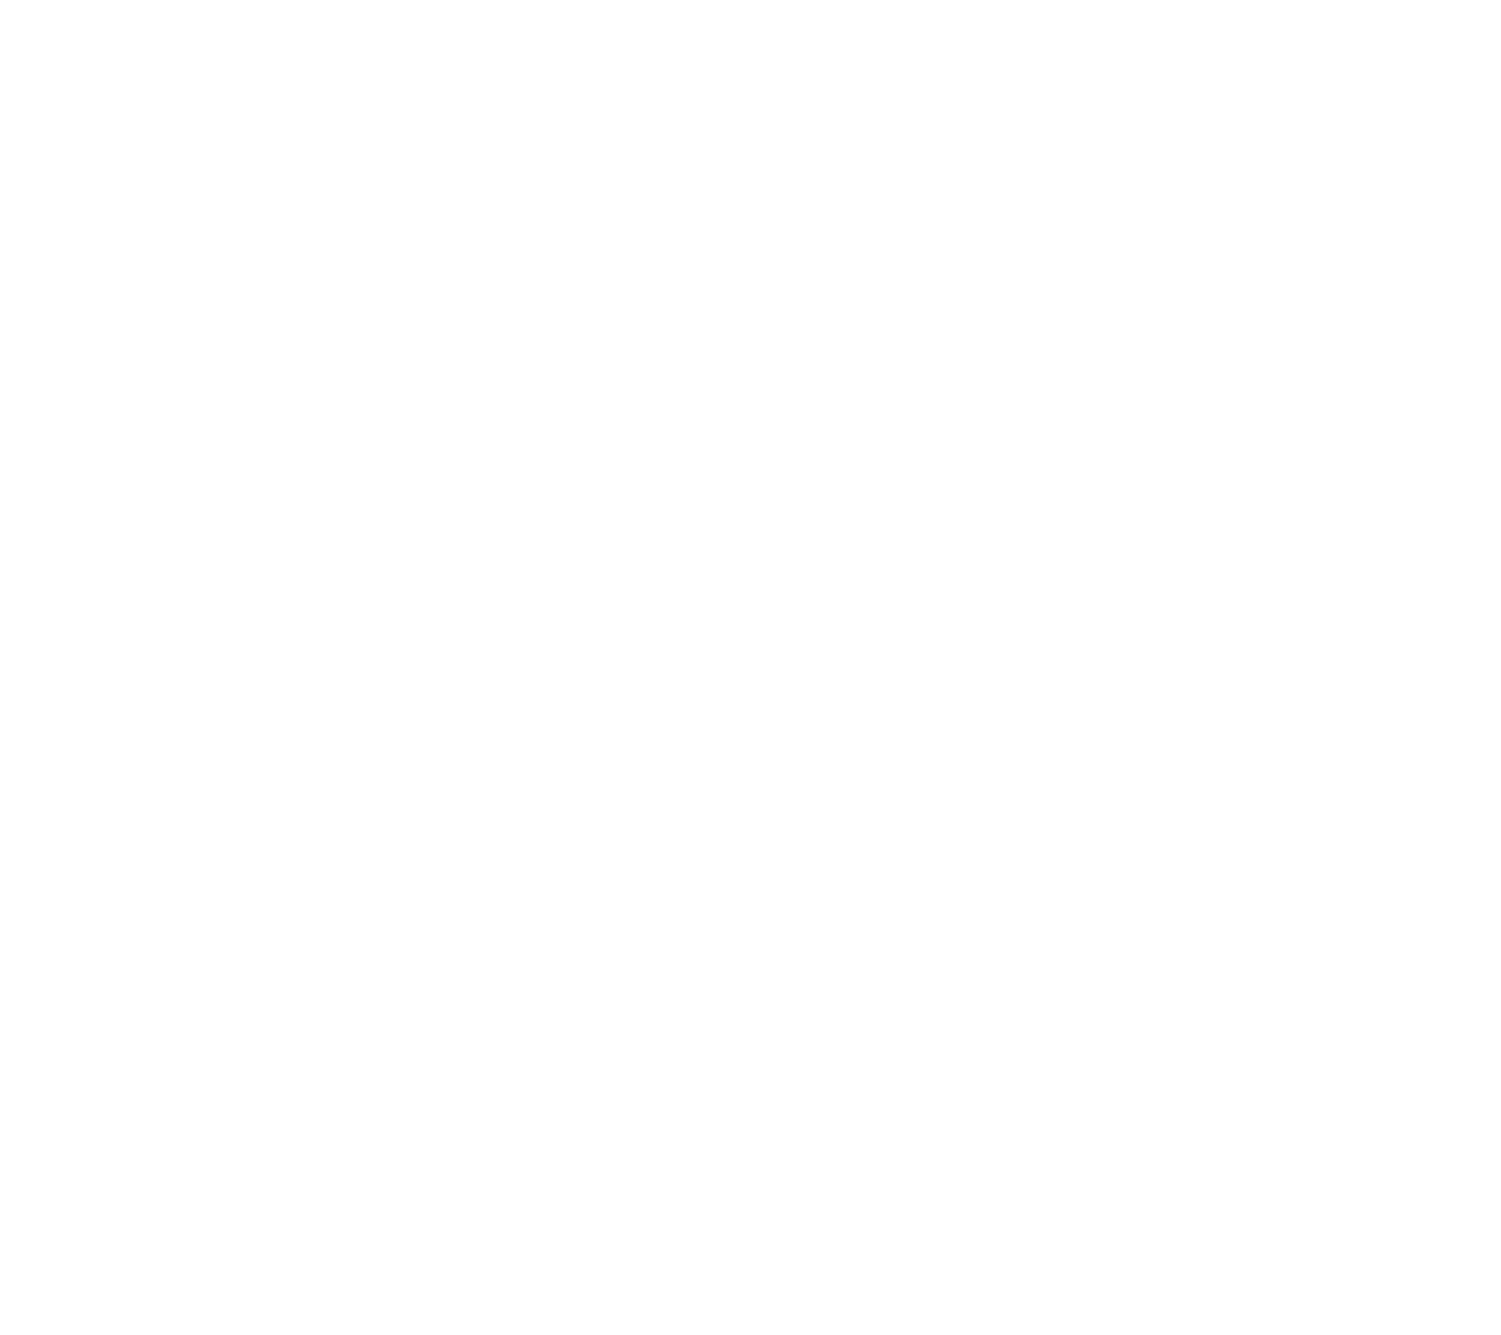 Garmin logo pour fonds sombres (PNG transparent)